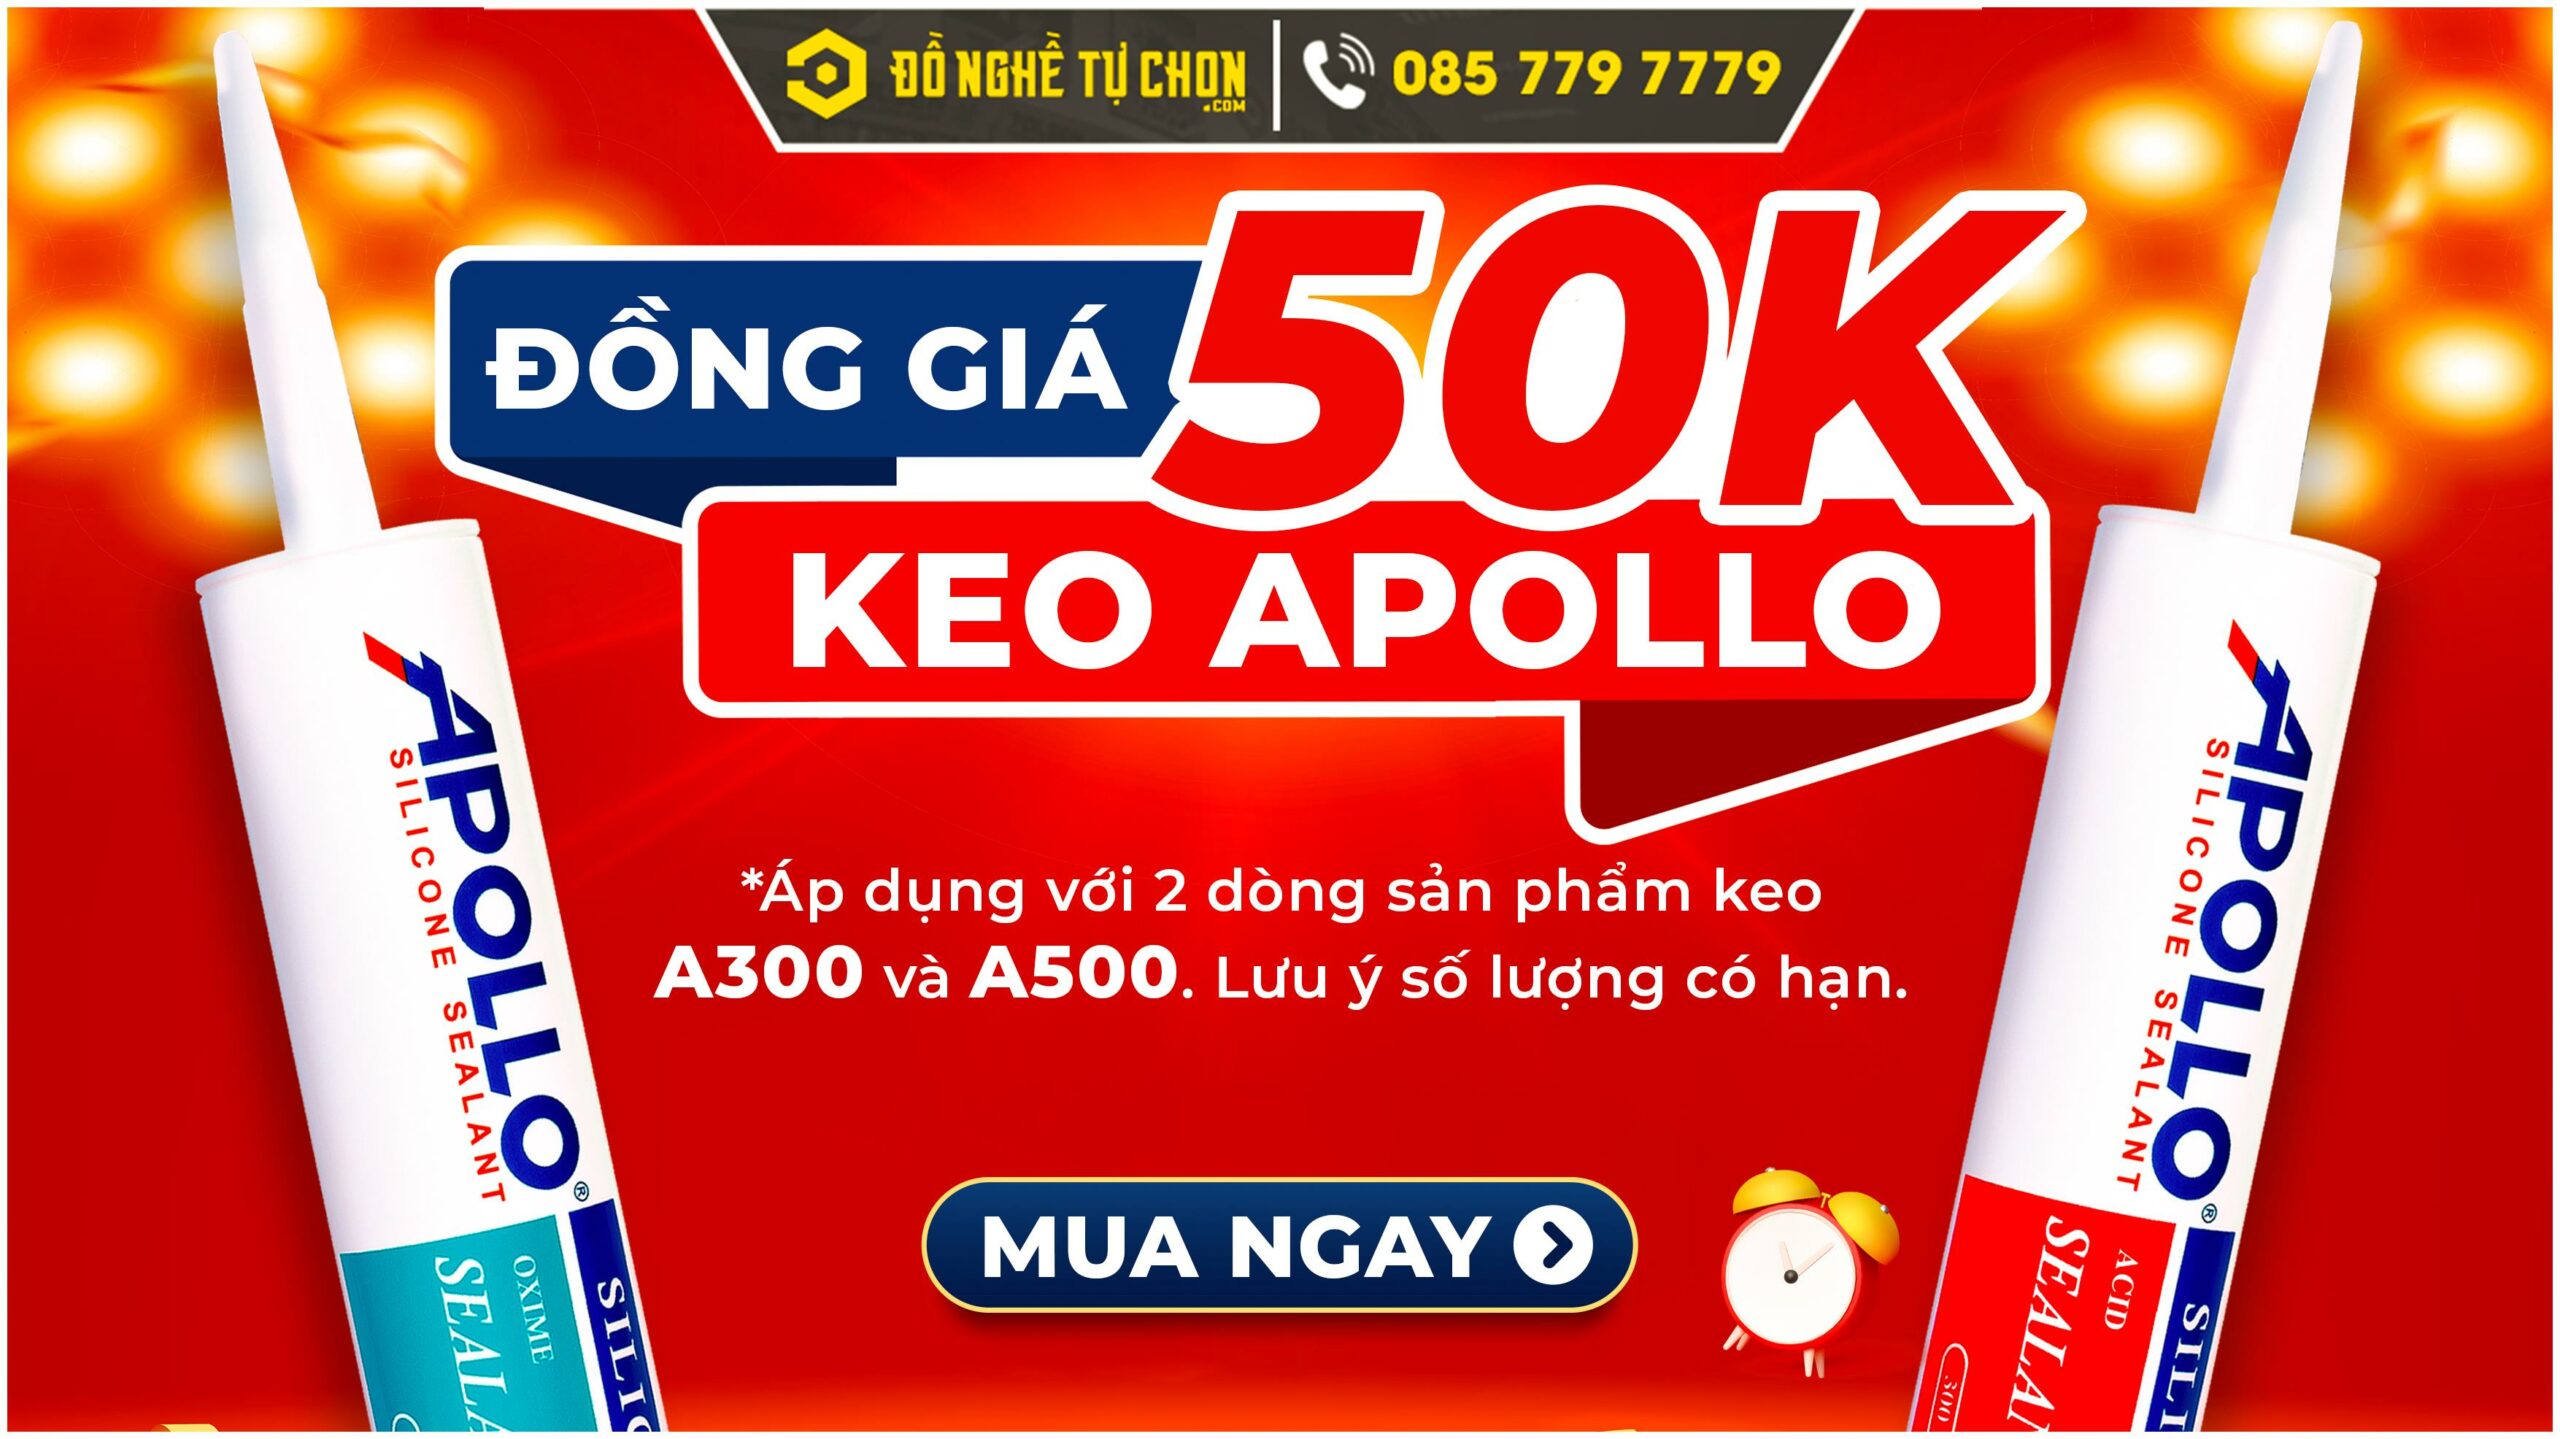 Đồng giá 50k Keo Silicone Apollo